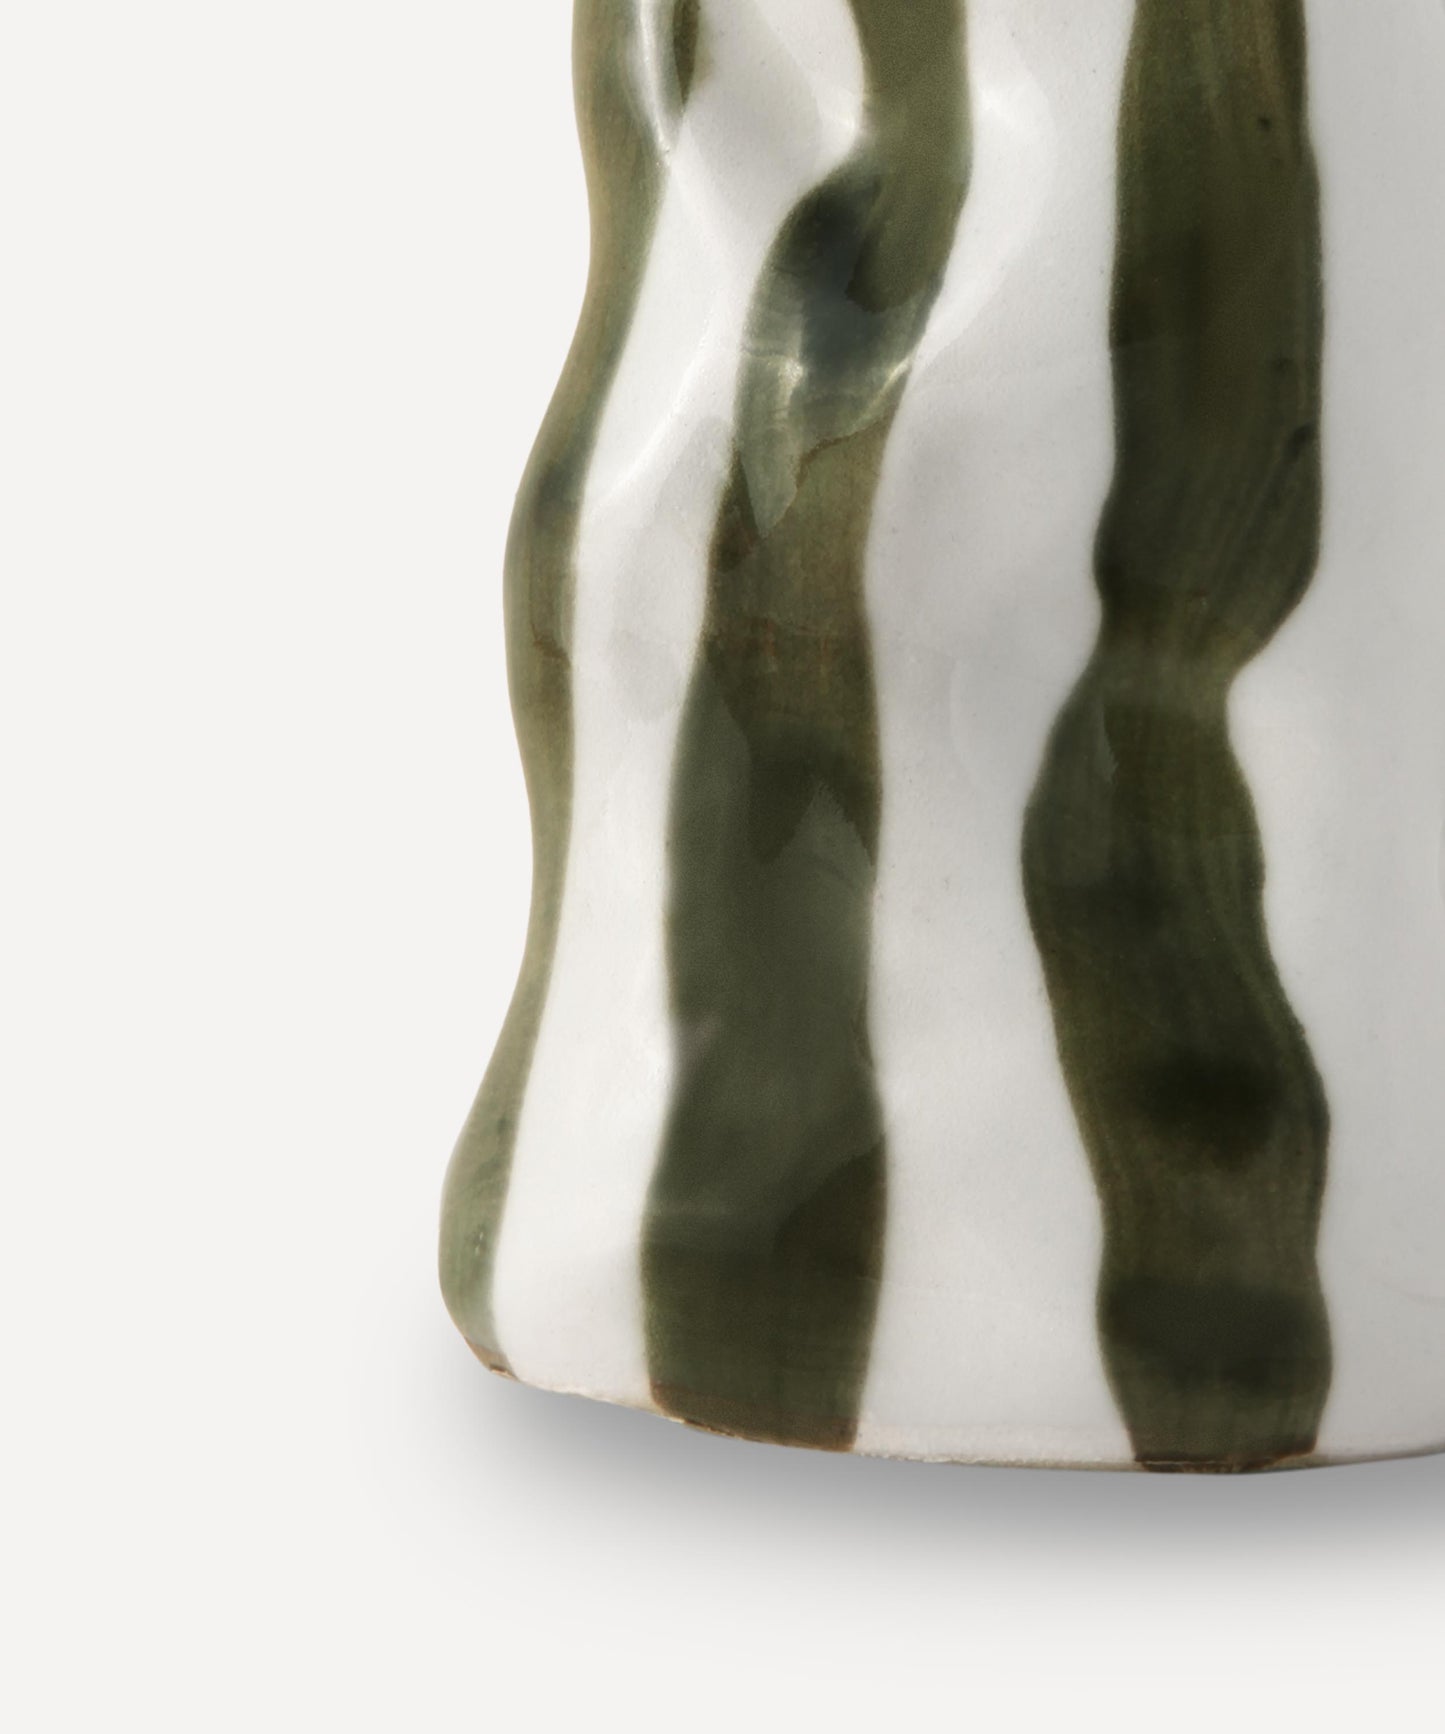 Dark forest green candy stripe vase